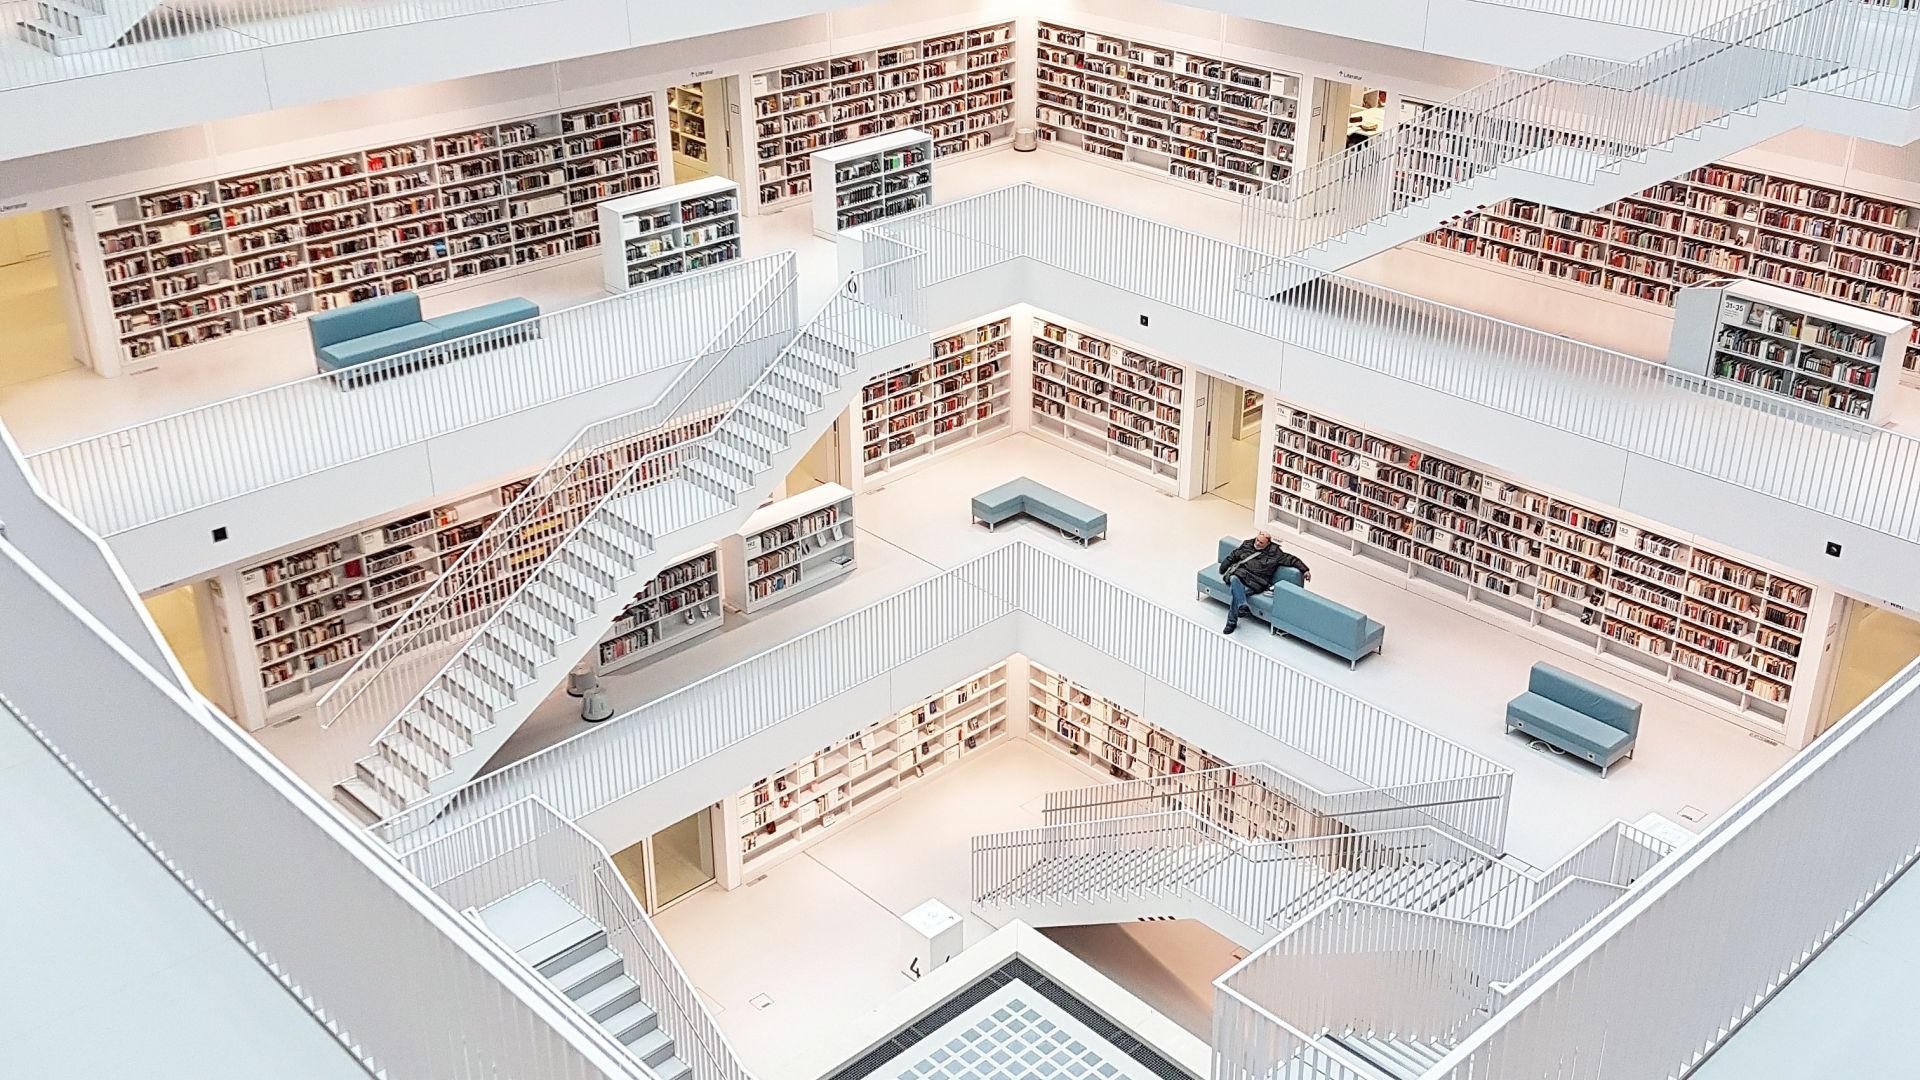 Stuttgart: City Library